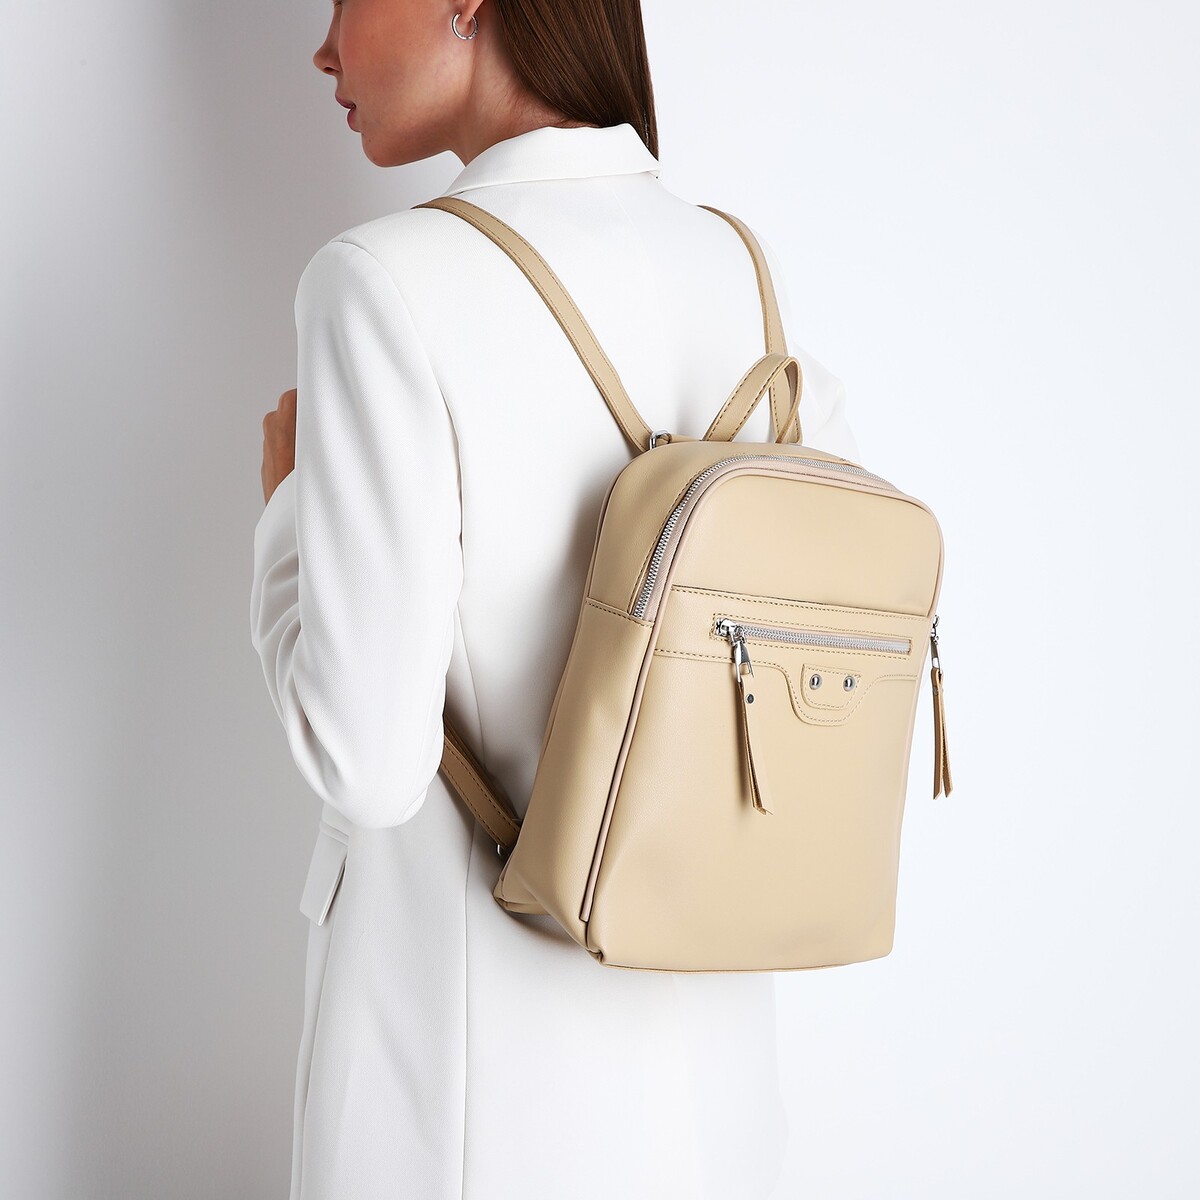 Рюкзак женский из искусственной кожи на молнии, 3 кармана, цвет бежевый рюкзак молодежный из текстиля 3 кармана белый бежевый